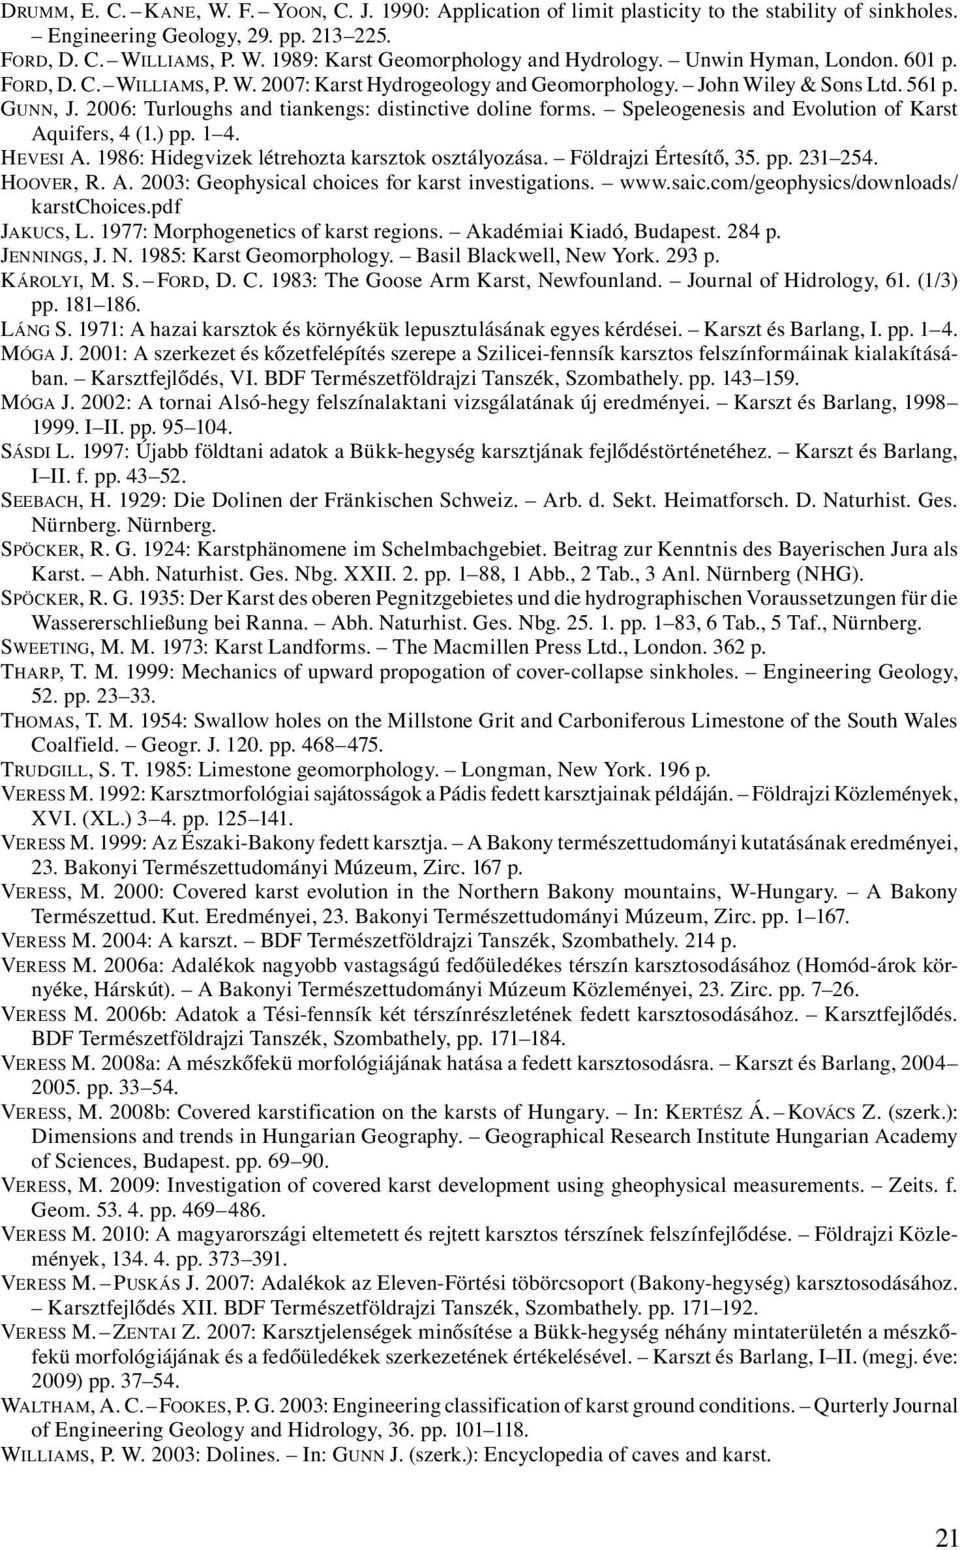 Speleogenesis and Evolution of Karst Aquifers, 4 (1.) pp. 1 4. HEVESI A. 1986: Hidegvizek létrehozta karsztok osztályozása. Földrajzi Értesítő, 35. pp. 231 254. HOOVER, R. A. 2003: Geophysical choices for karst investigations.